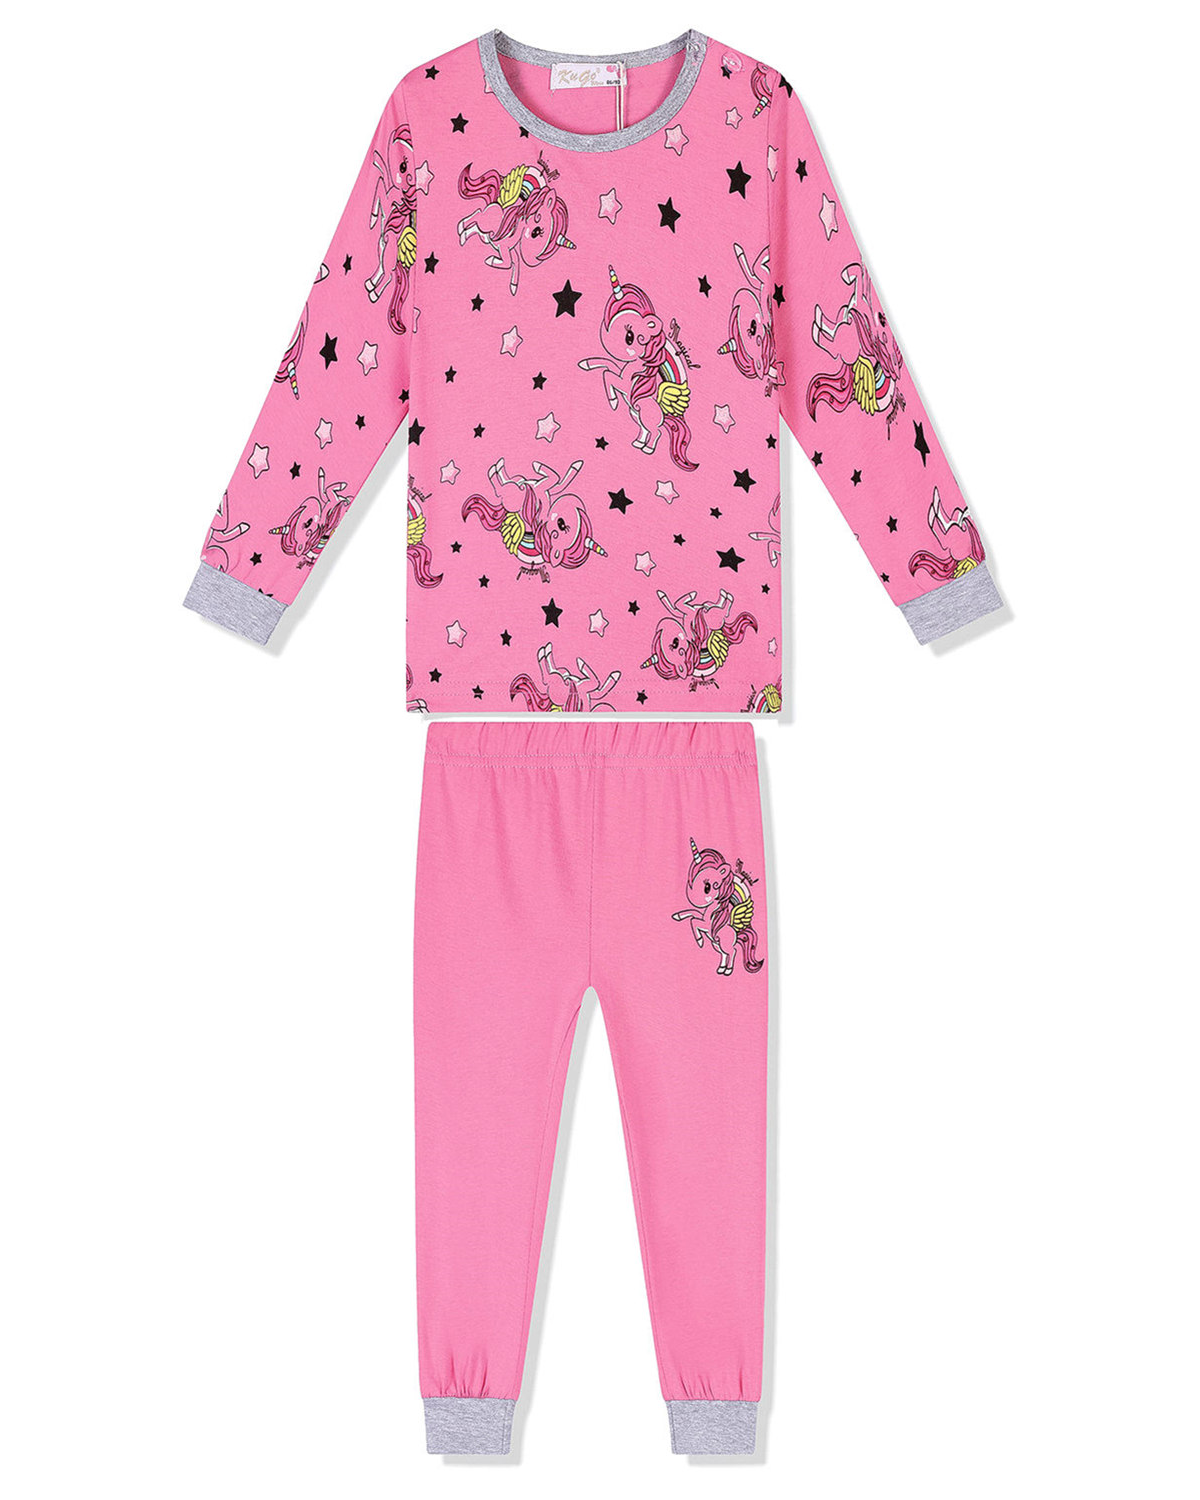 Dívčí pyžamo - KUGO MP1326, sytě růžová Barva: Růžová tmavší, Velikost: 86-92